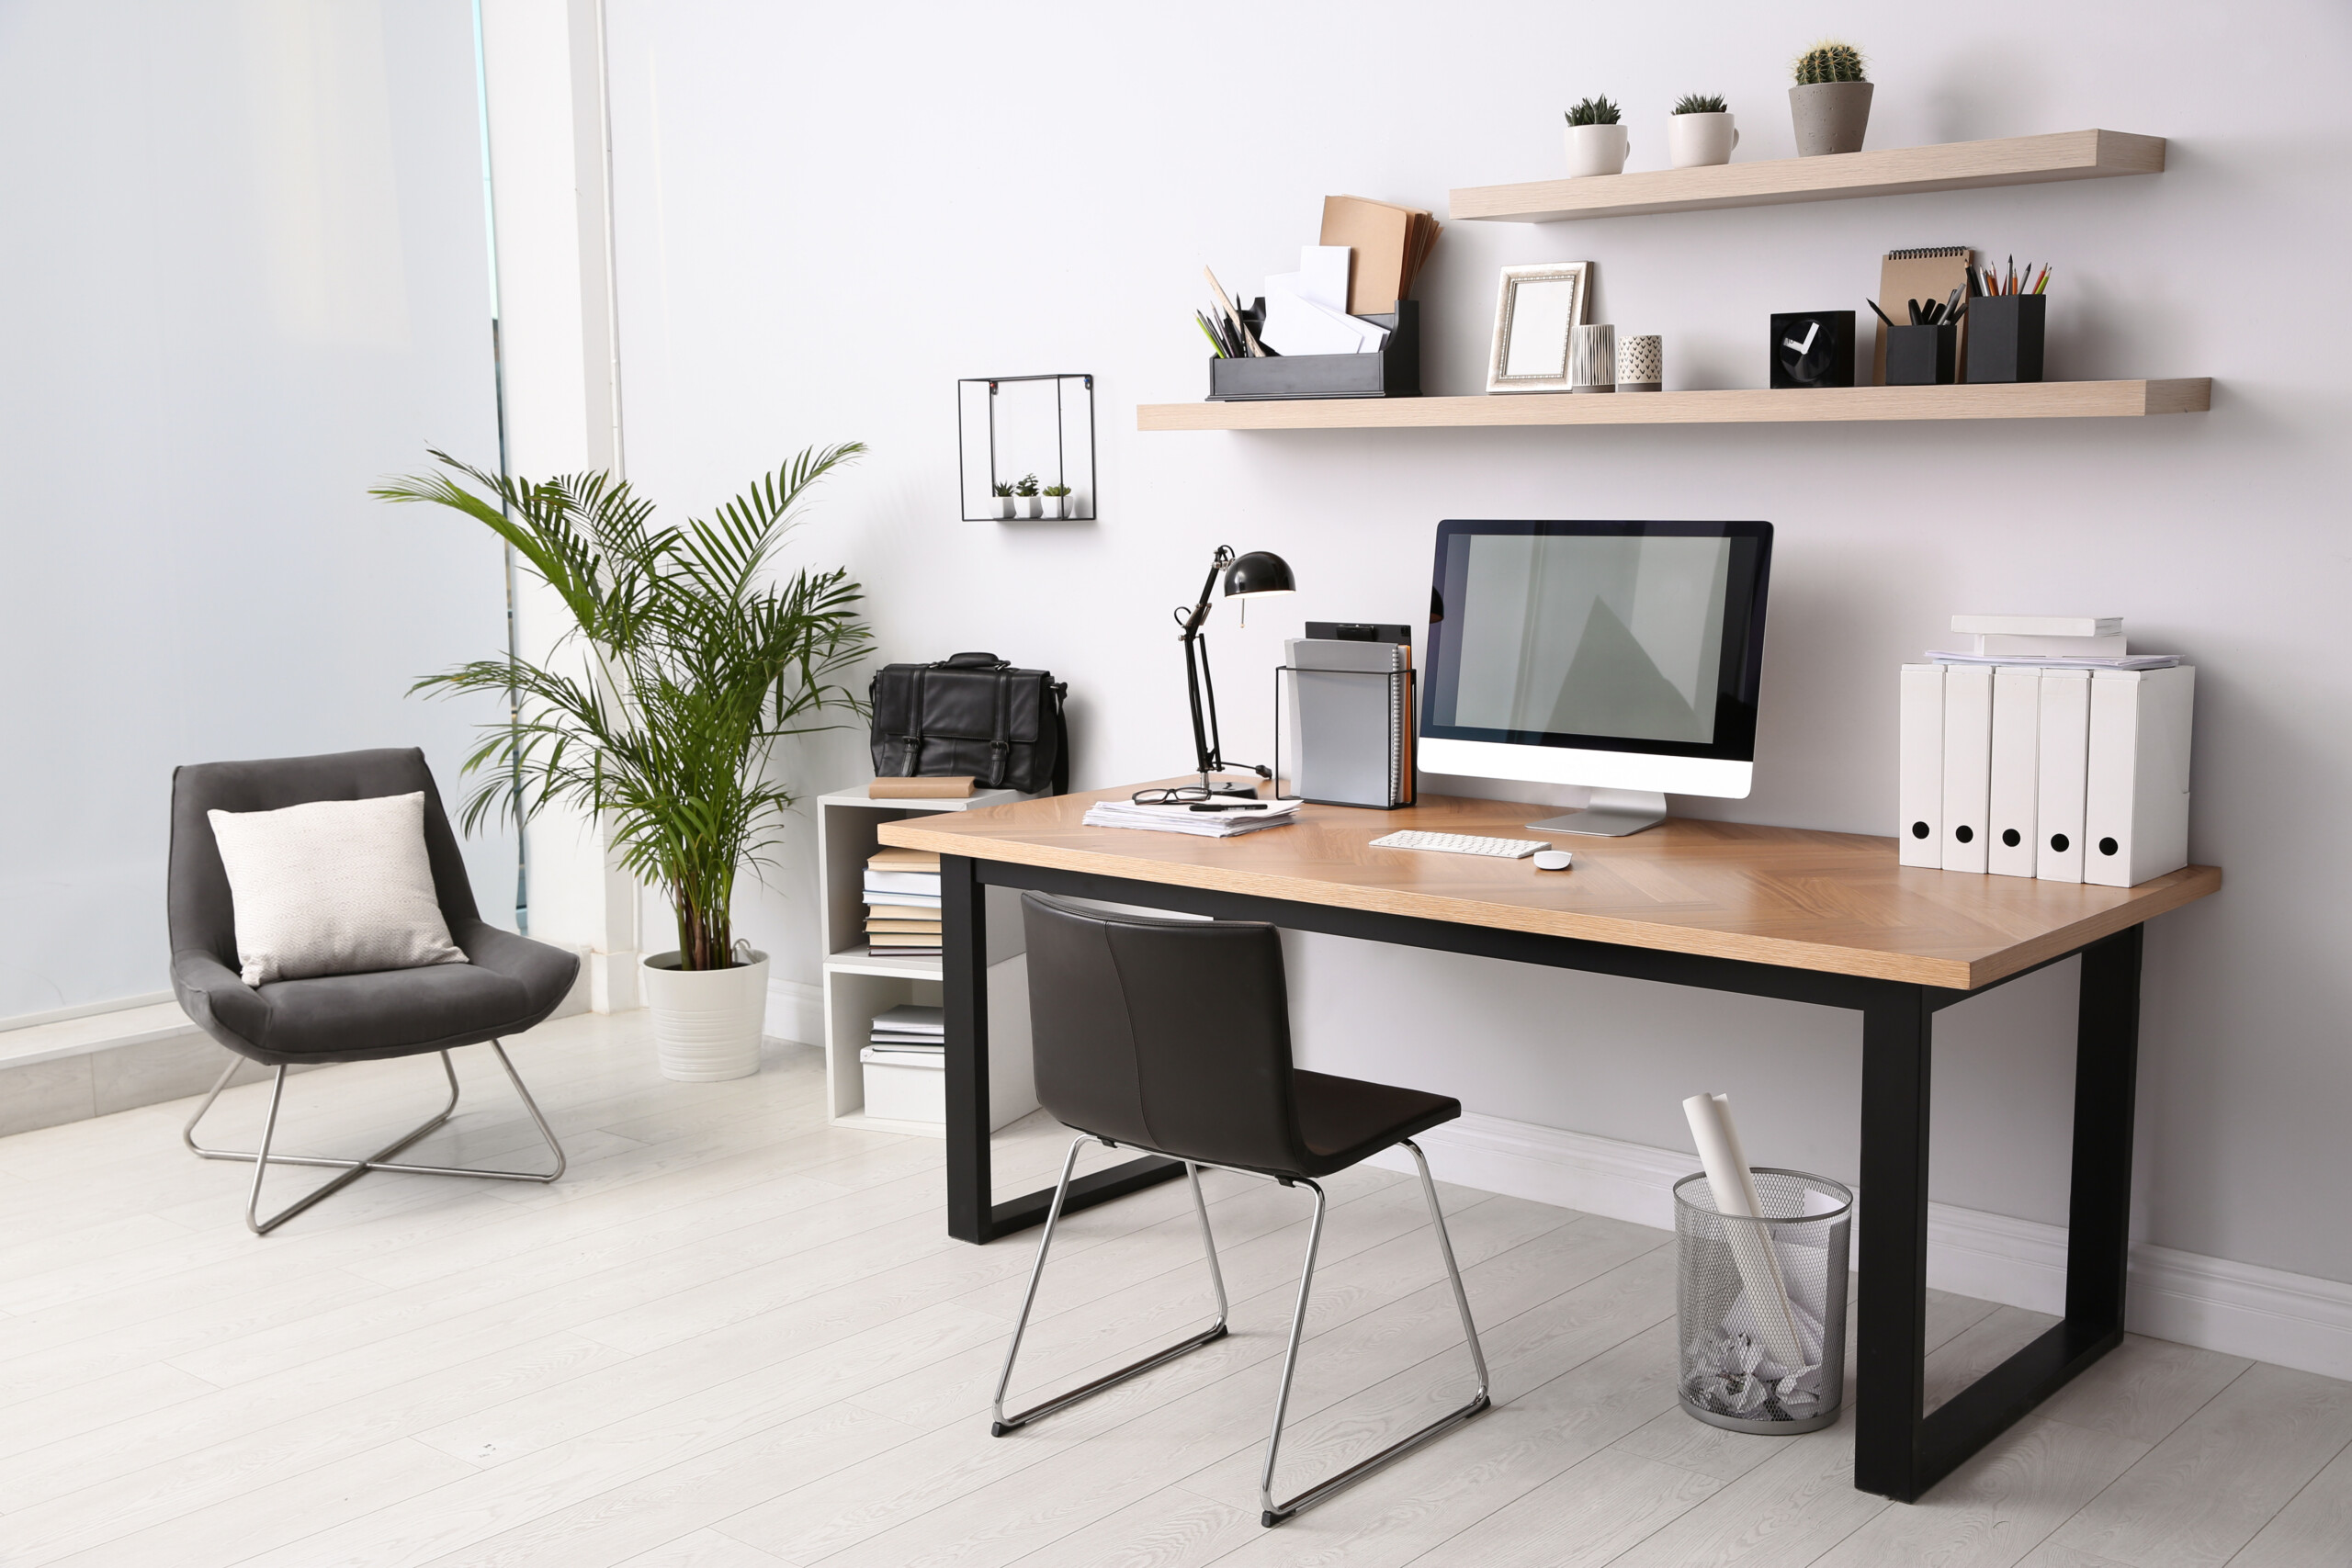 Cách chọn bàn văn phòng phù hợp cho không gian nhỏ